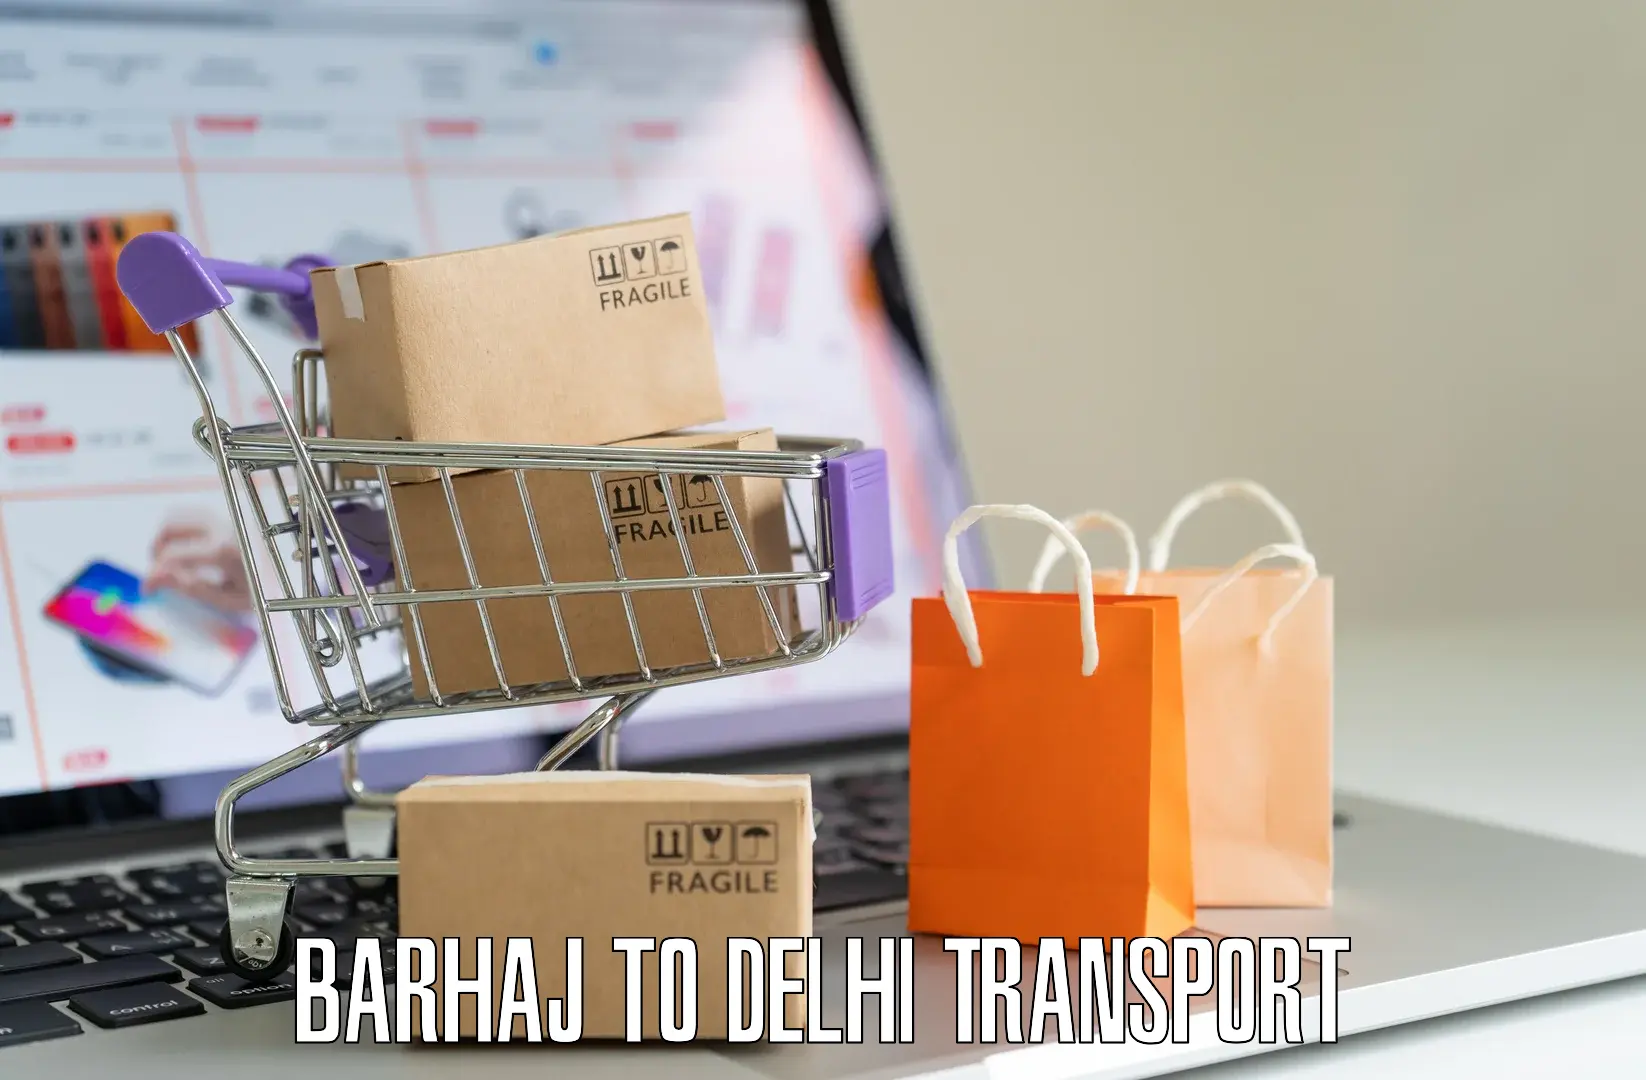 Daily transport service Barhaj to Ashok Vihar